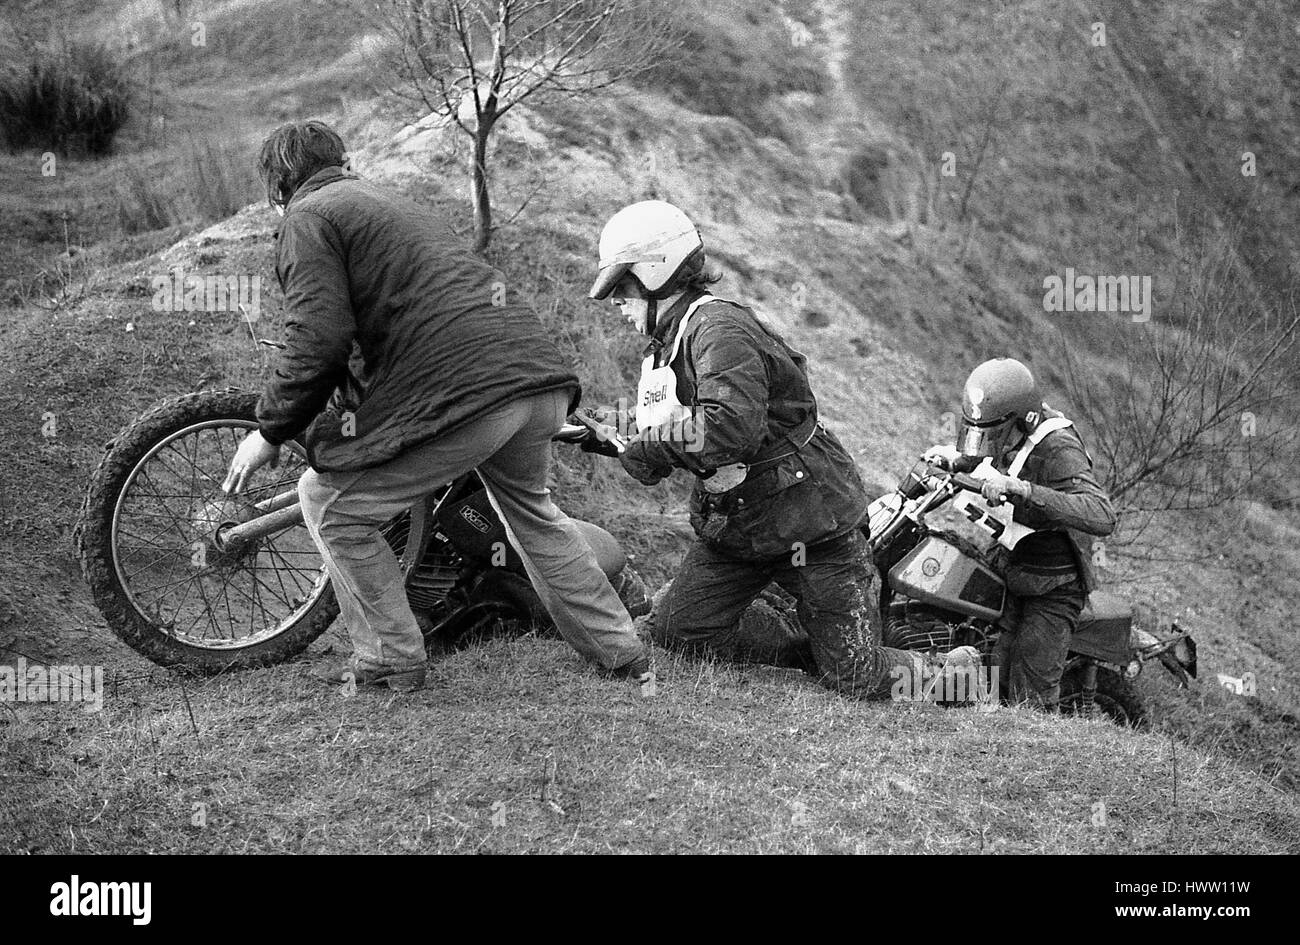 Lutte concurrents dans la boue à l'événement moto enduro Étapes Sudbury à Sudbury dans le Suffolk, en Angleterre, le 27 novembre 1977. Banque D'Images